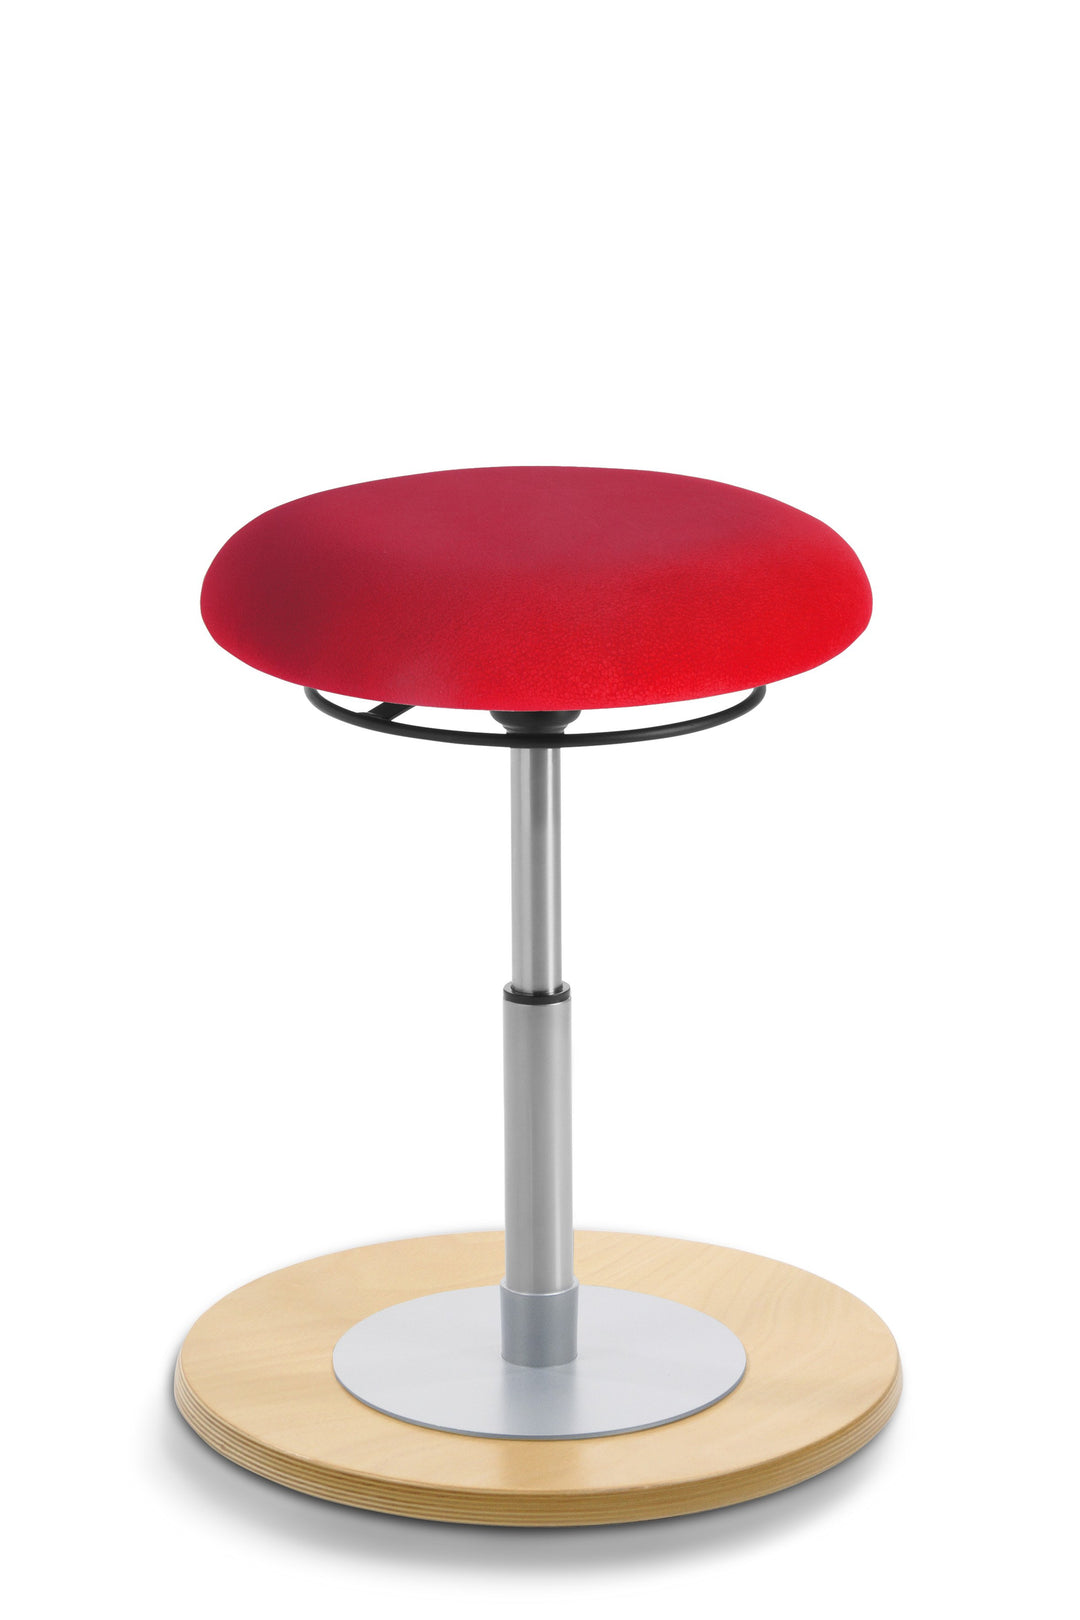 Mayer MyErgosit Taboret Krzesło Stołek balansujący okrągły 39-52cm podstawa sklejka naturalna 1151 N